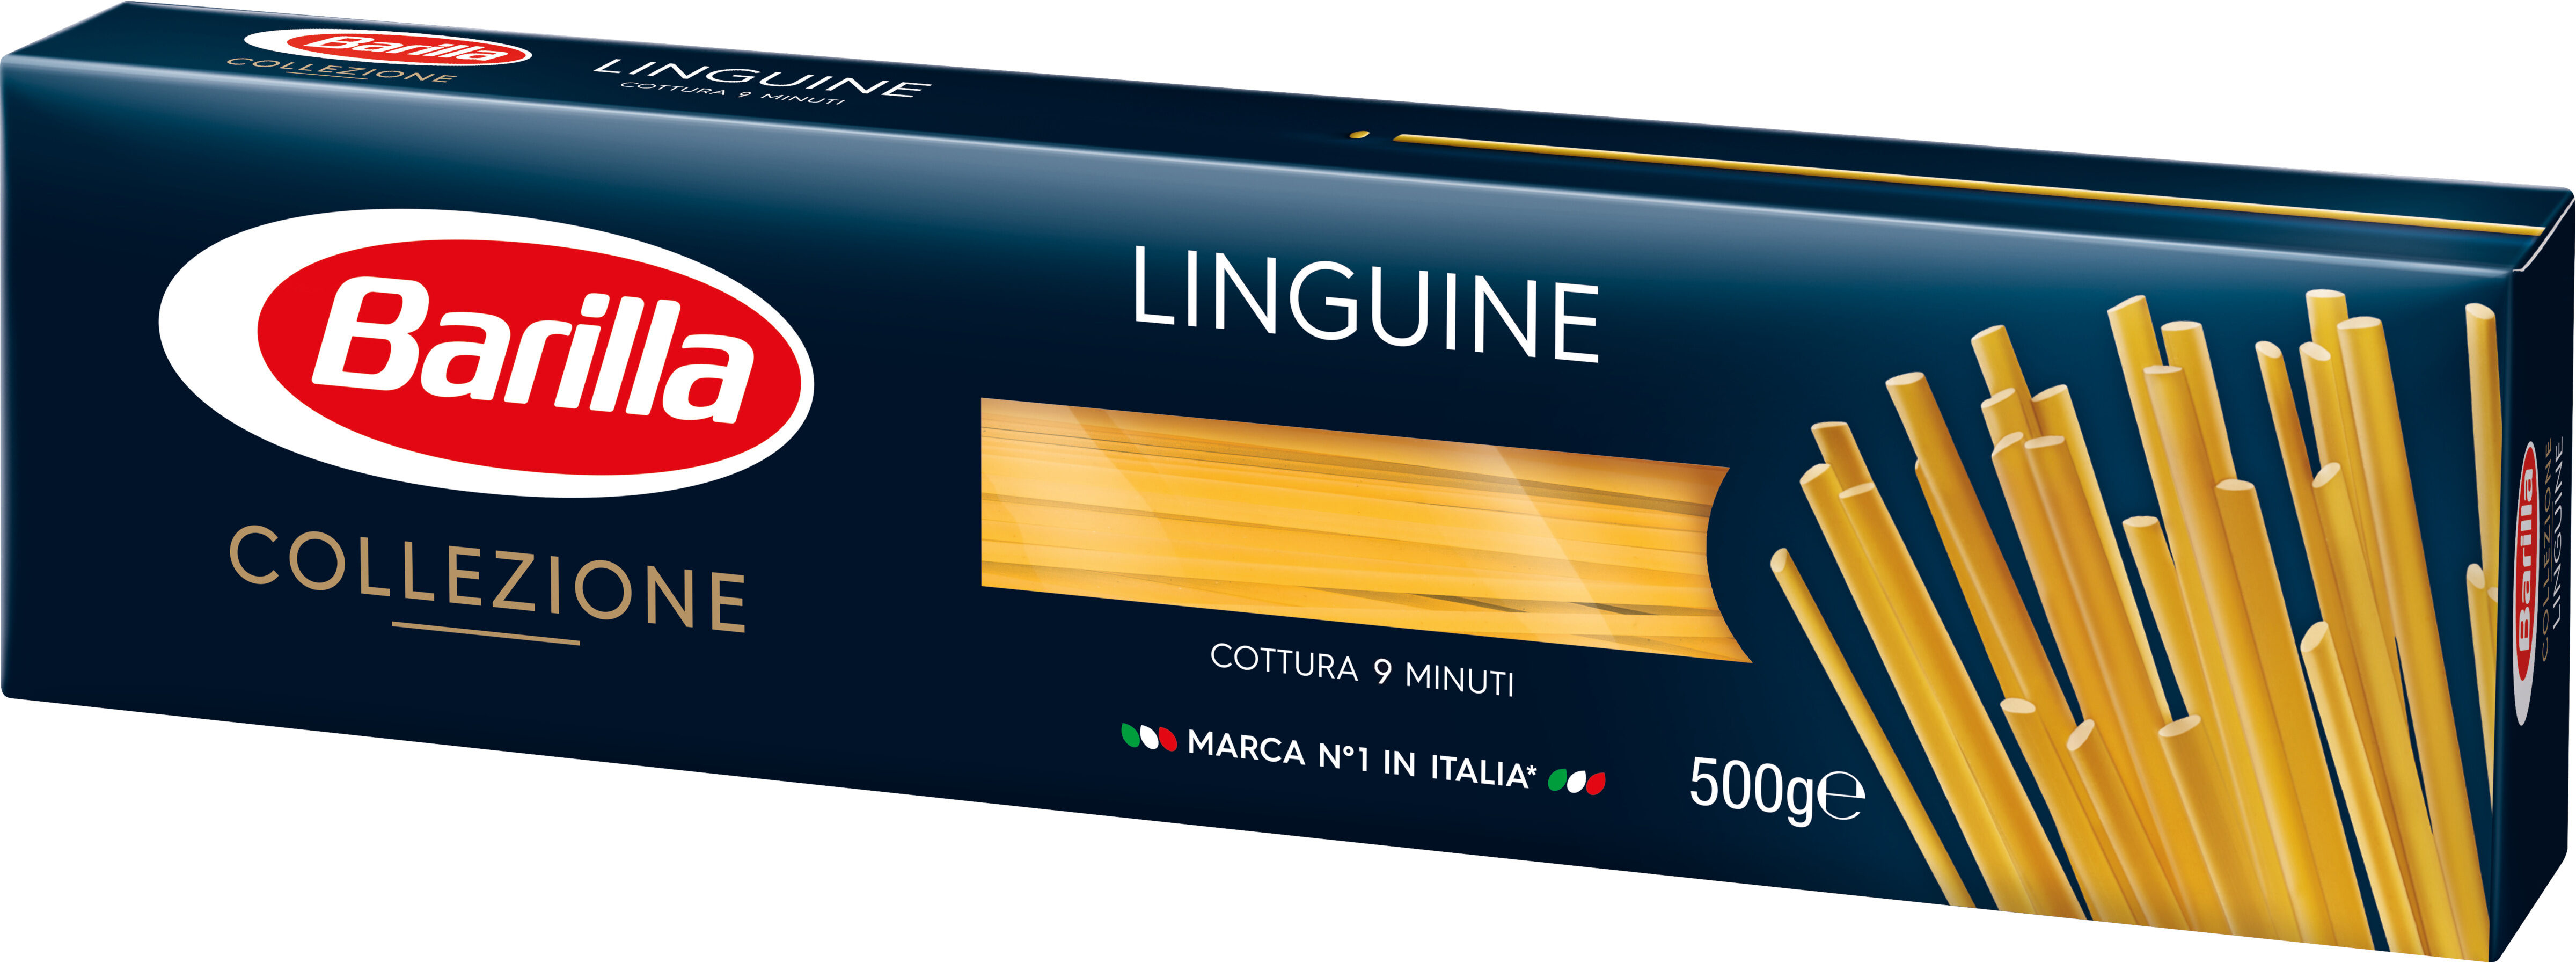 Barilla pates collezione linguine 500g - Produit